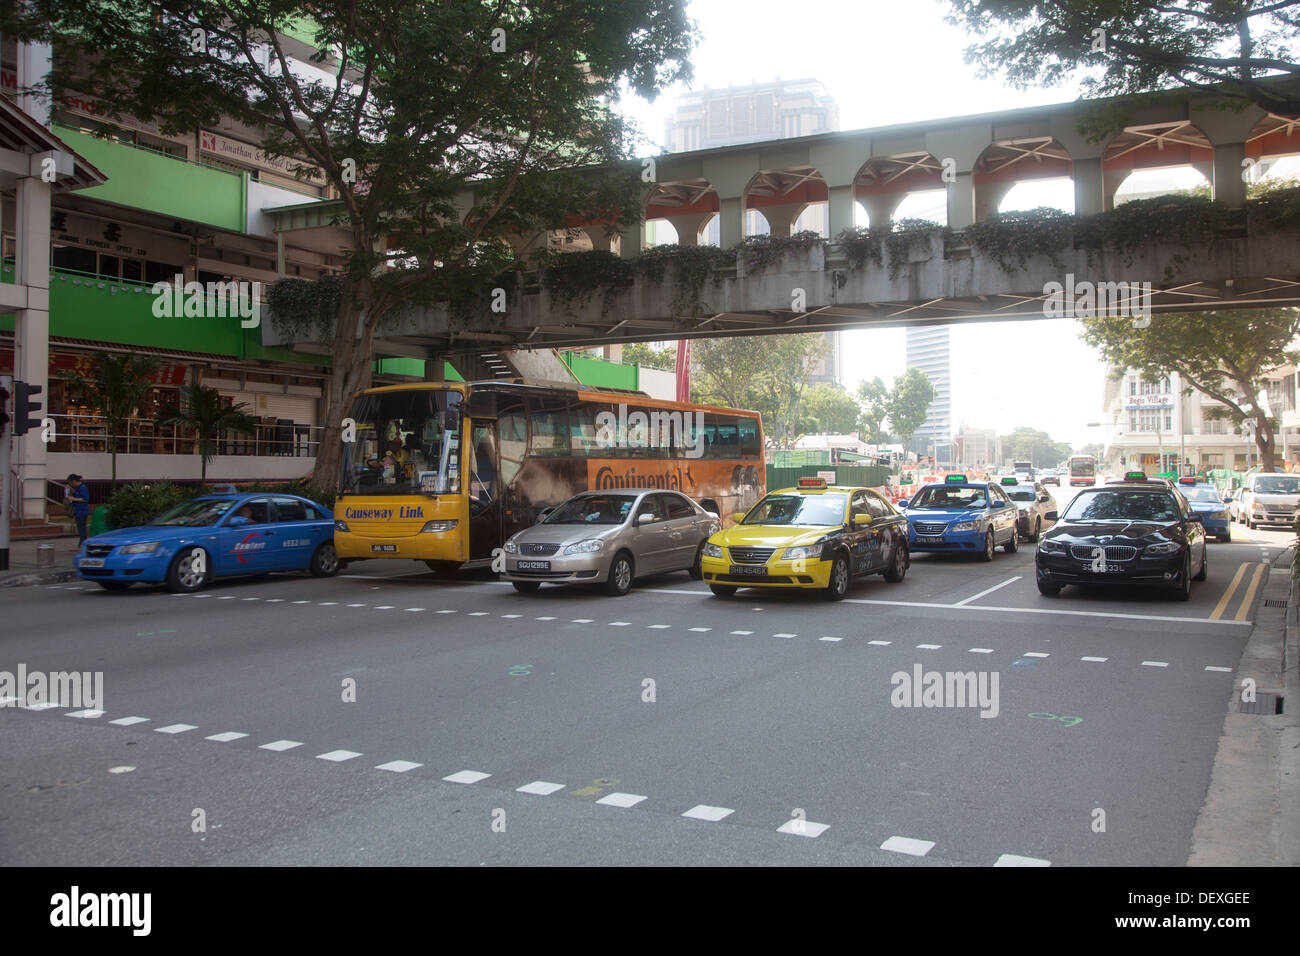 Strada del traffico della città di Singapore Asia auto street spostare il dispositivo di azionamento per azionare i pendolari pendolari trasporti trasporto taxi cabina giorno Foto Stock